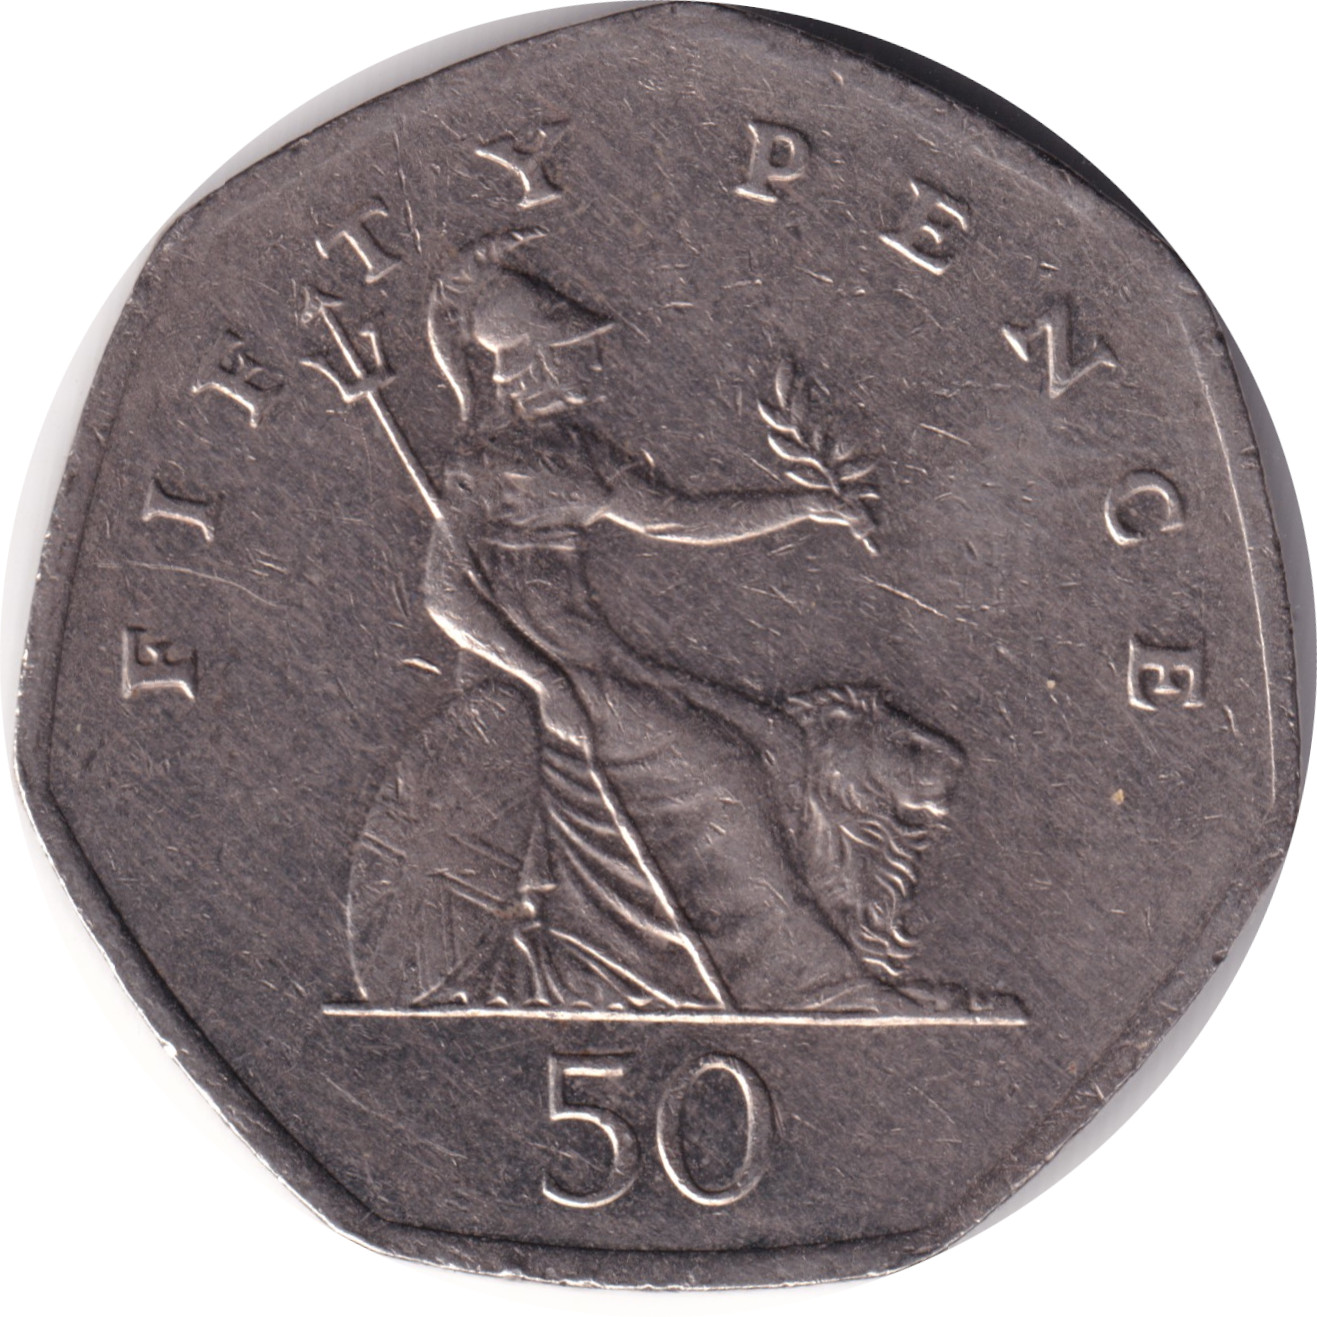 50 pence - Elizabeth II - Tête agée - Britannia